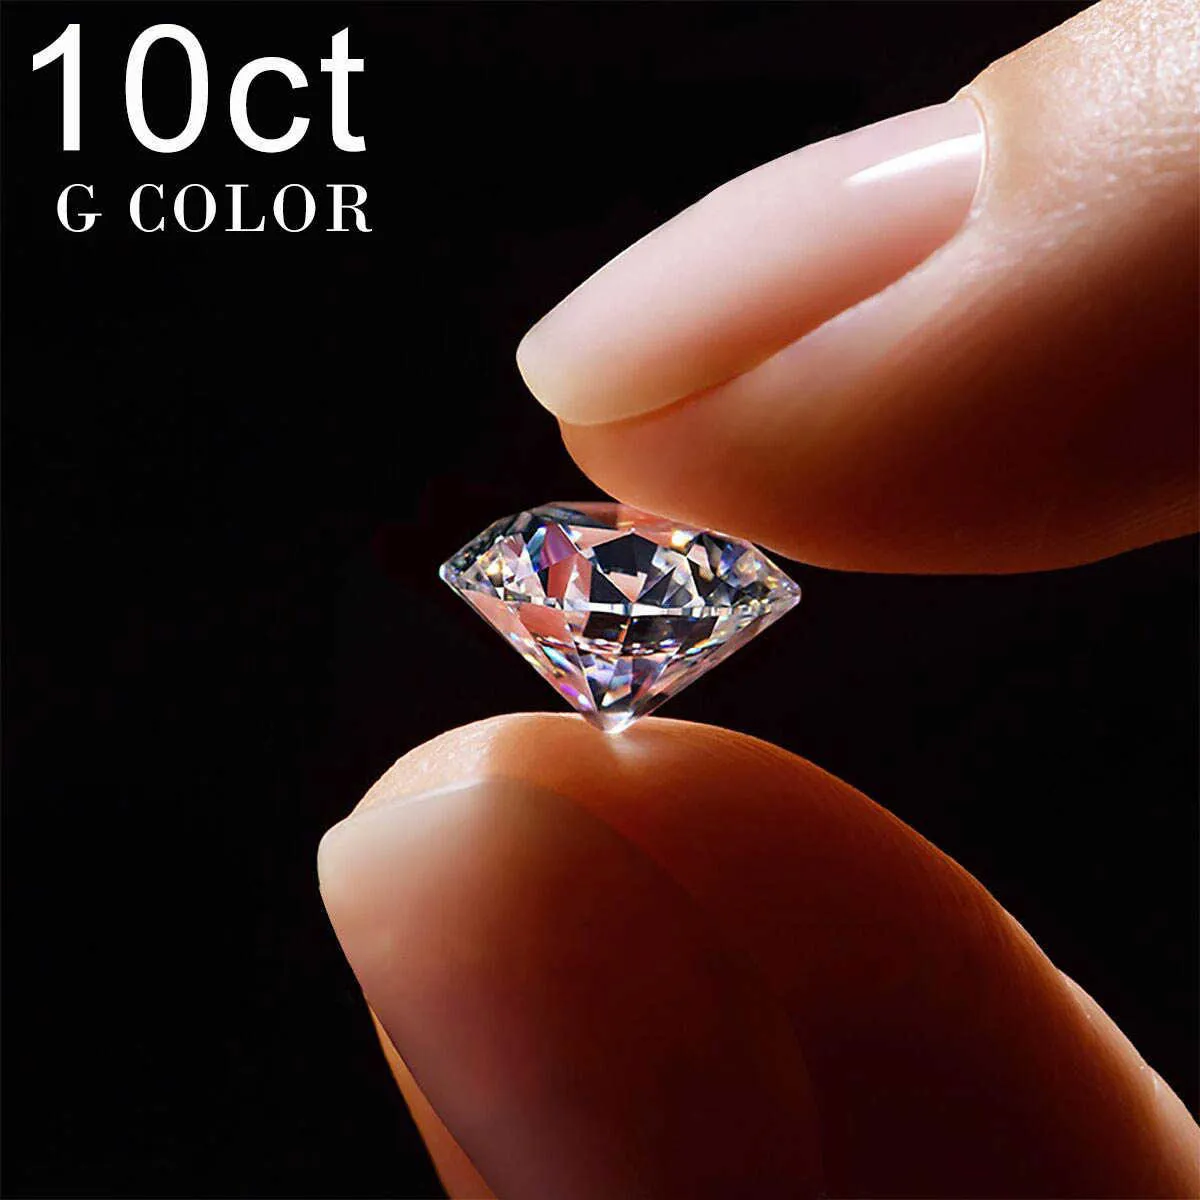 10ct 14mm g färg äkta lös ädelsten moissanit sten passera diamant tester med gra certifikat 8 hjärtan 8 pilar stor pärla het h1015